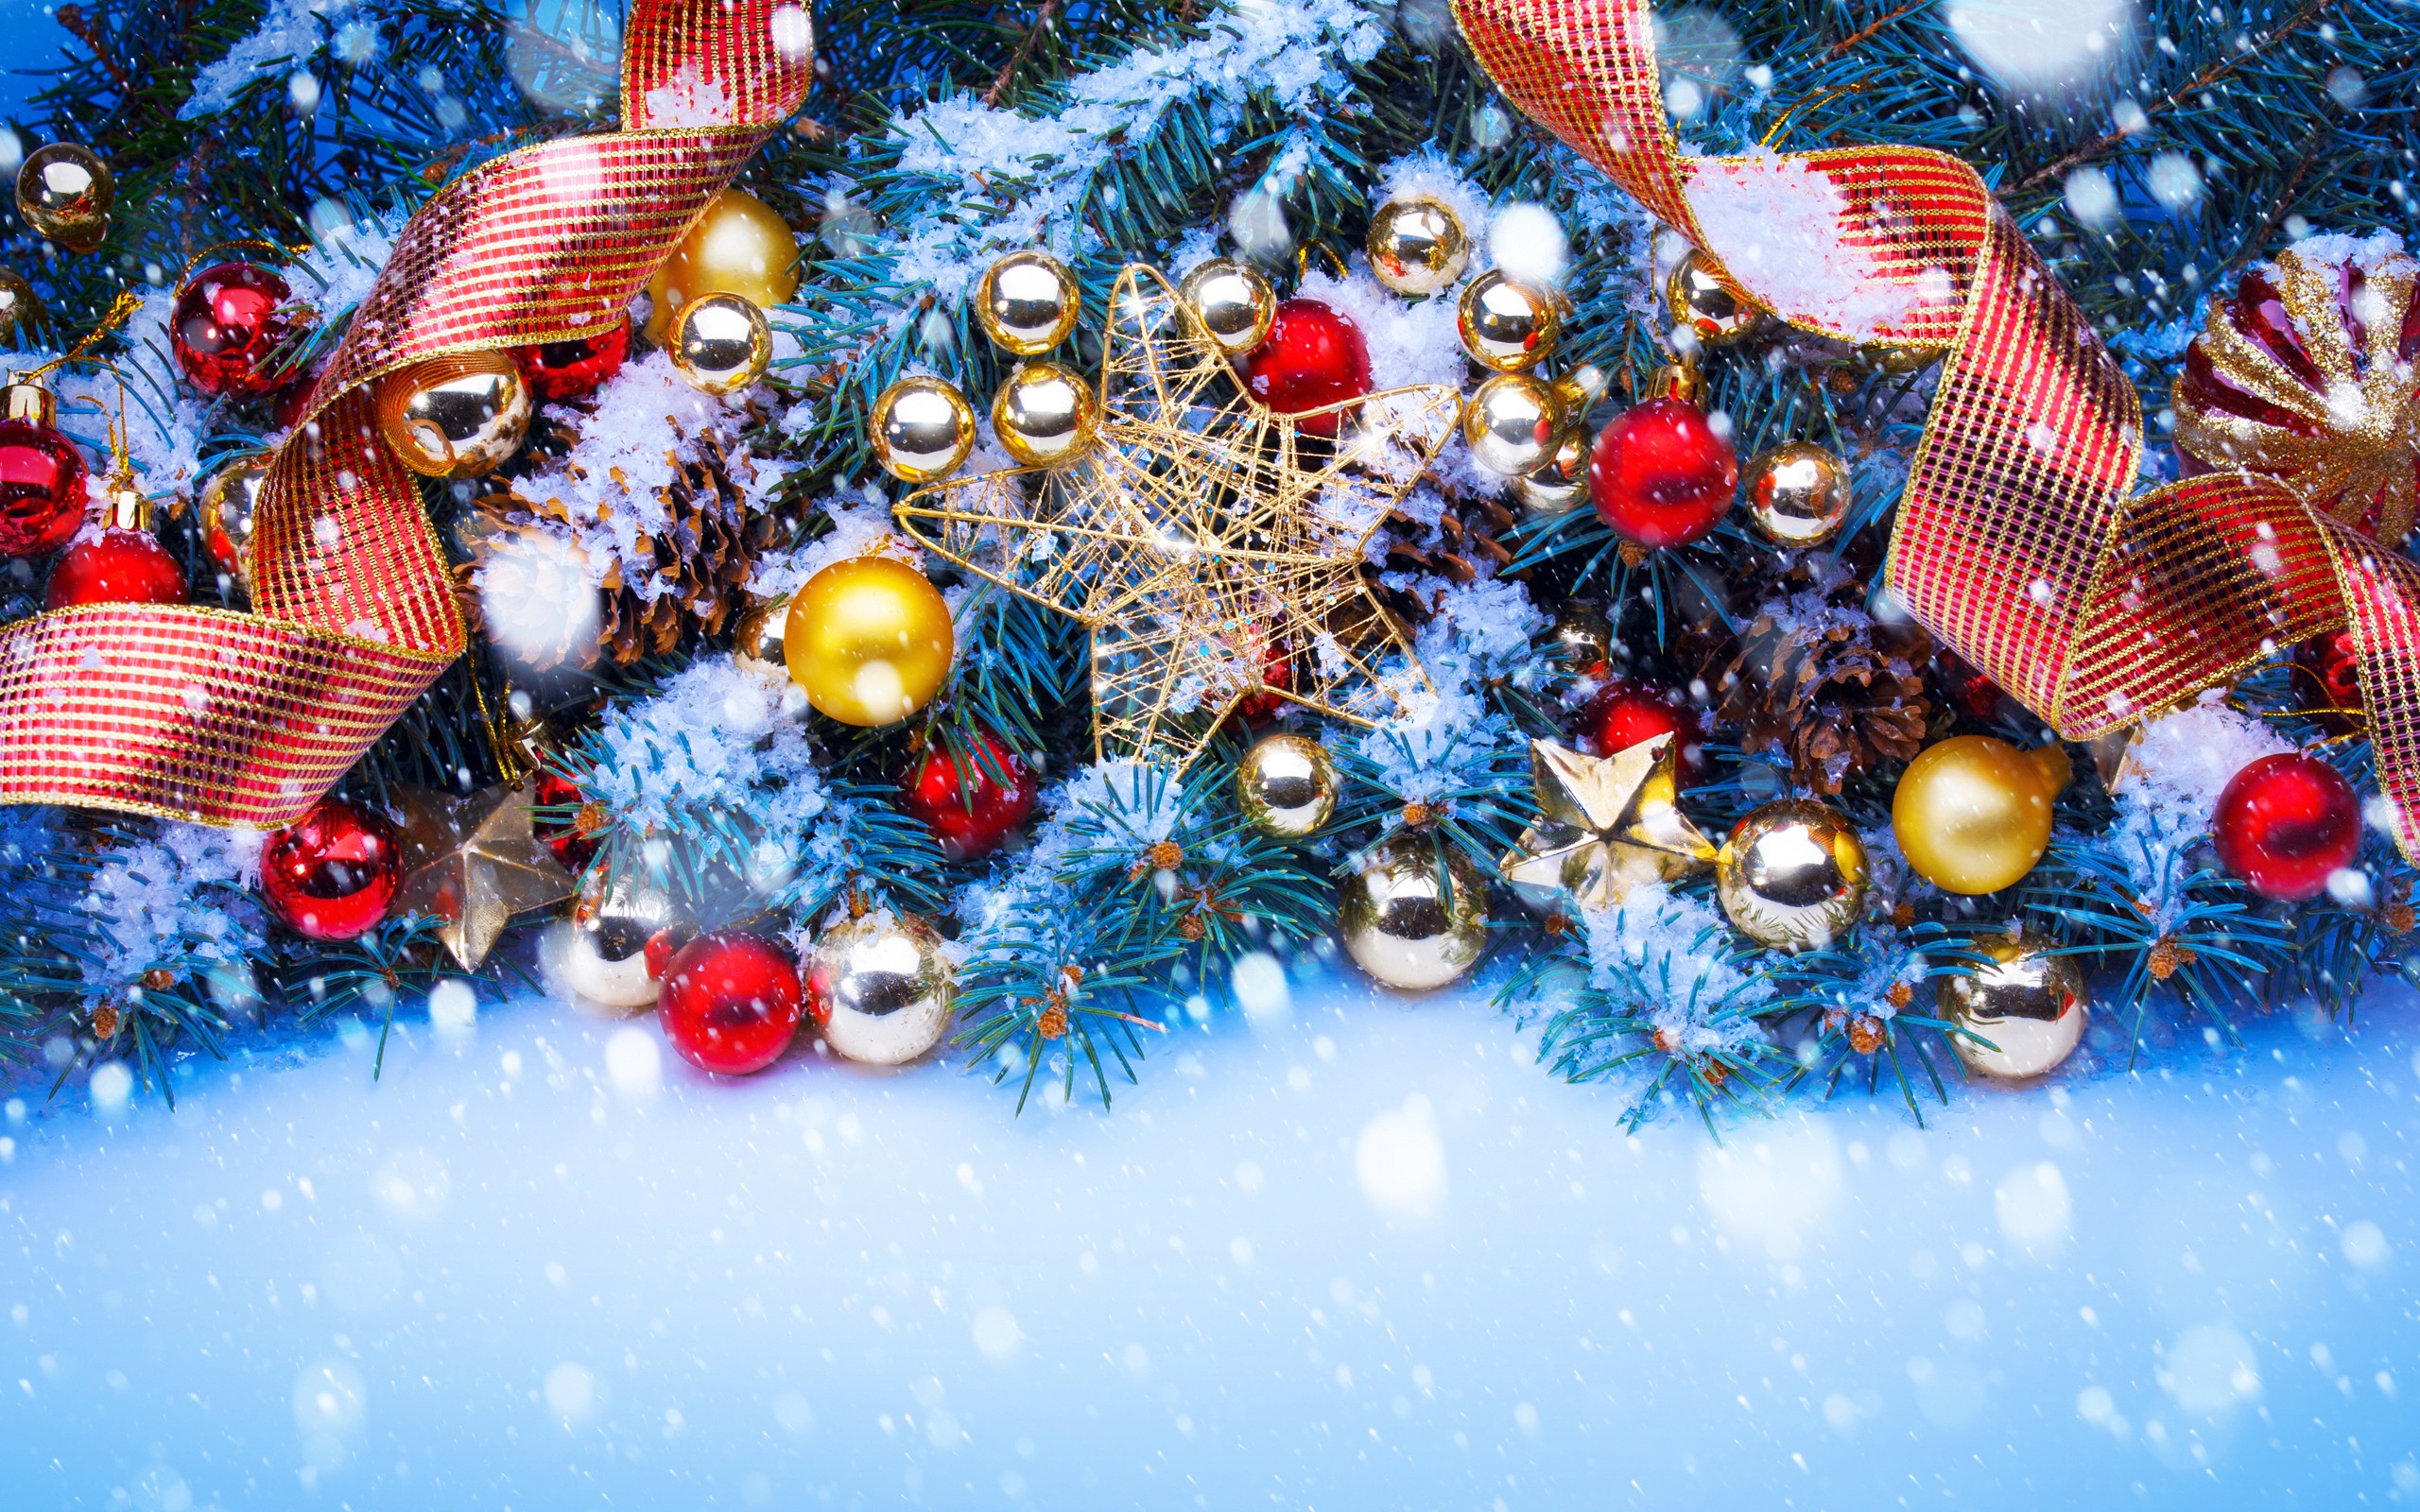 クリスマスの飾りの壁紙,クリスマスオーナメント,クリスマスの飾り,クリスマスツリー,クリスマス,木